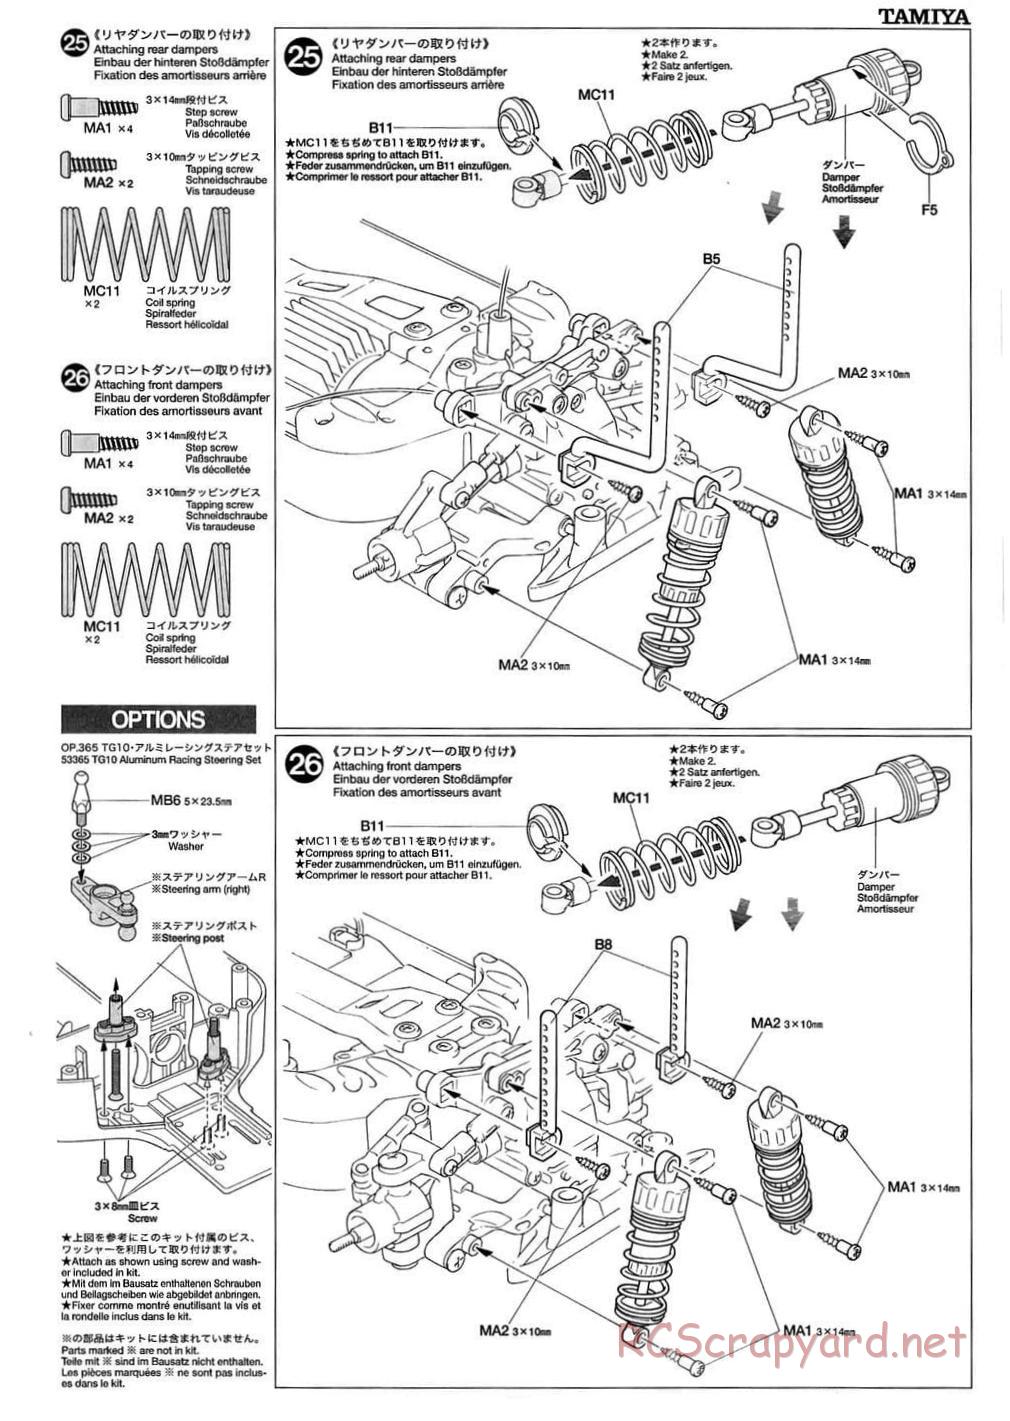 Tamiya - TB-01 Chassis - Manual - Page 13